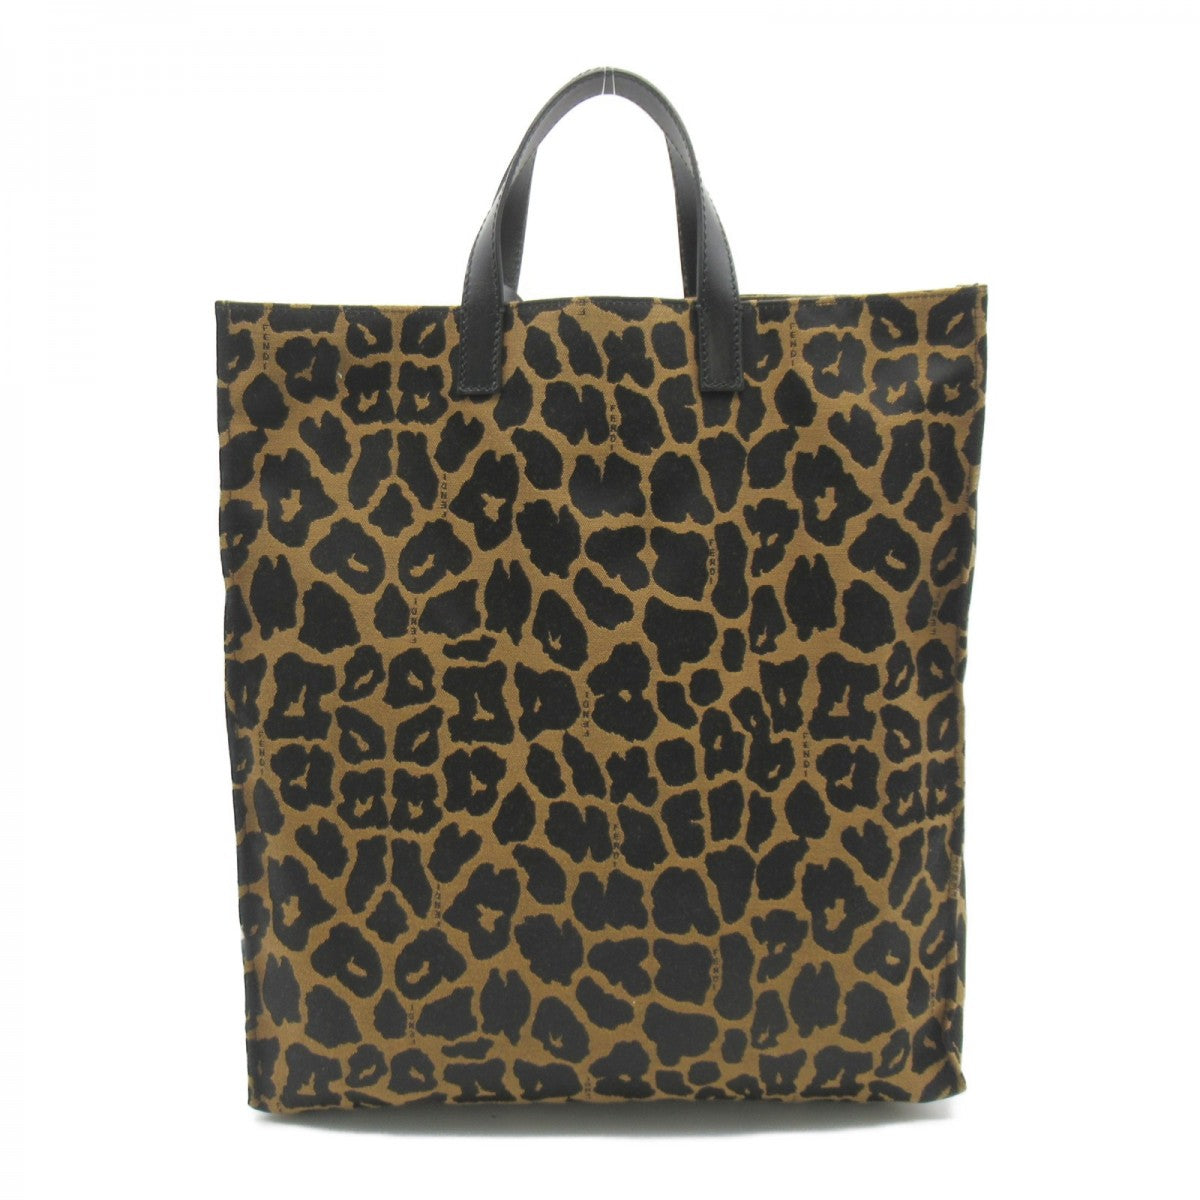 Leopard Print Canvas Tote Bag 8BH173